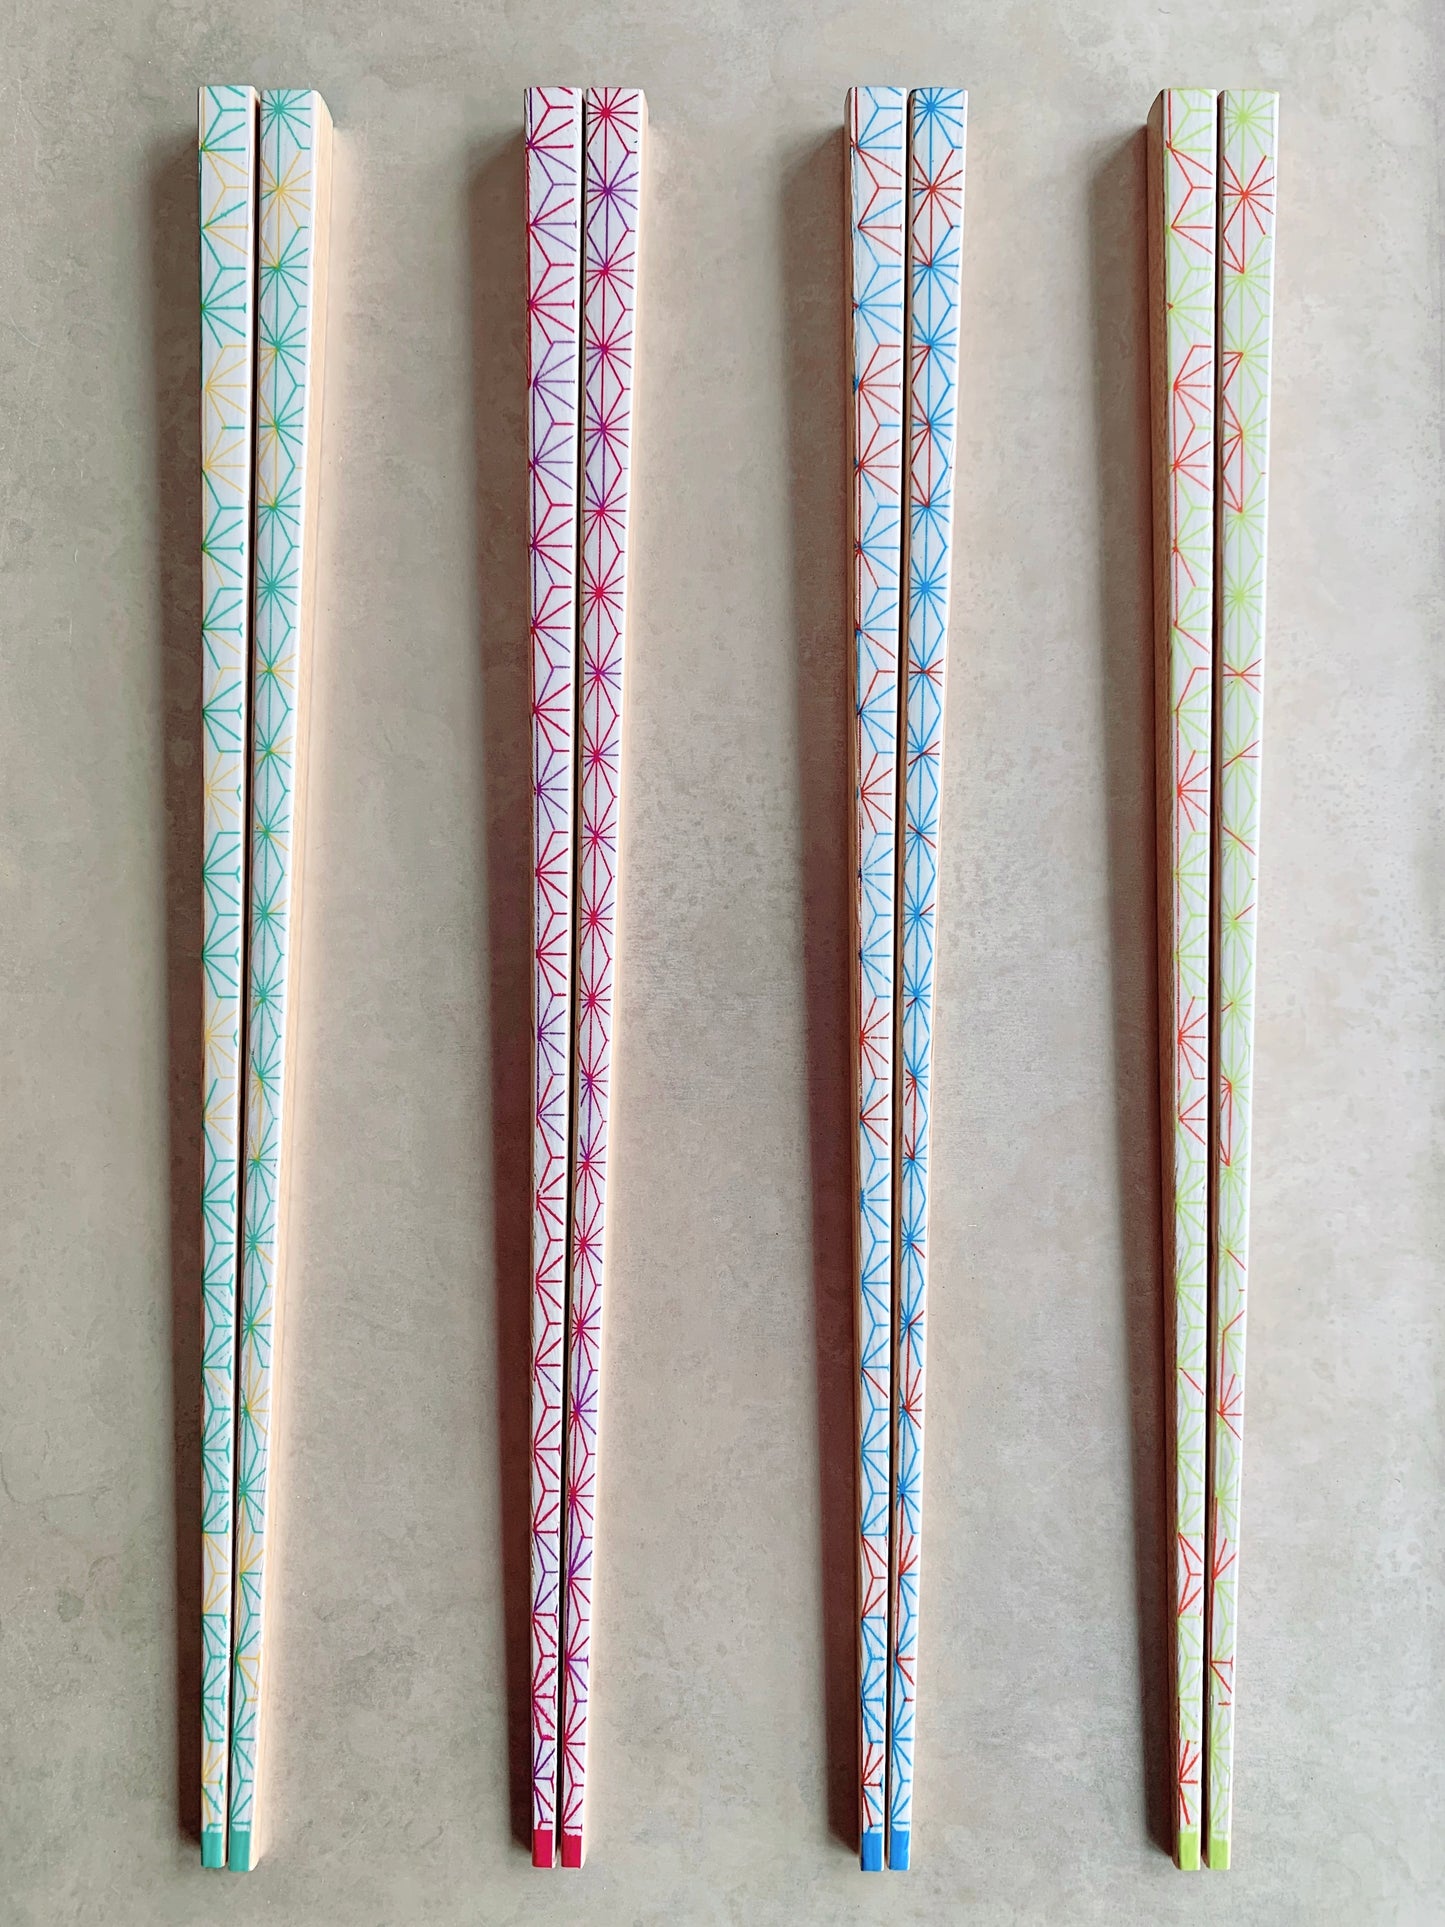 Chopsticks Asanoha Light Green